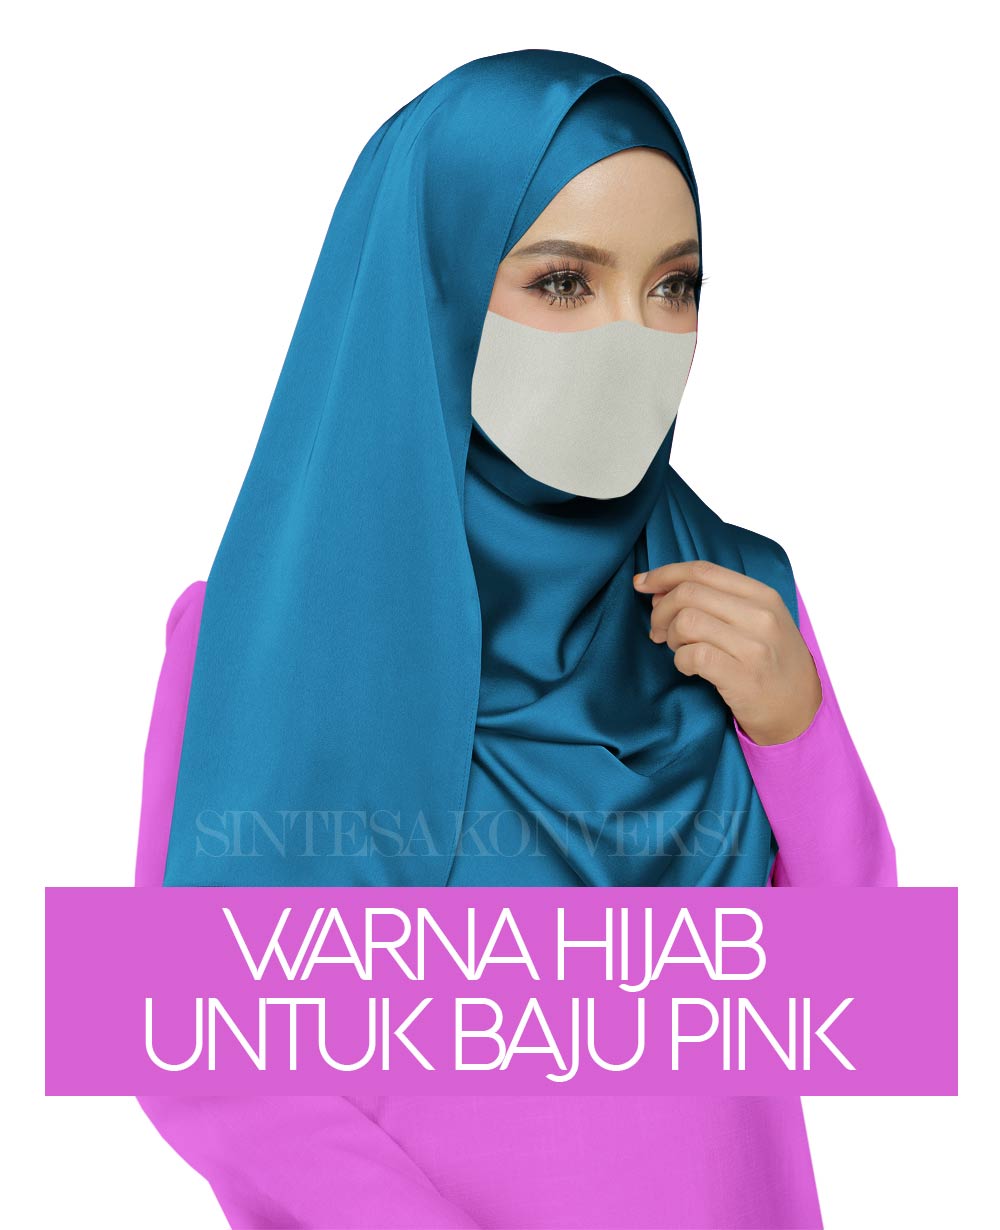 Baju Pink Cocok dengan Jilbab Warna Apa? Jangan Salah Pilih